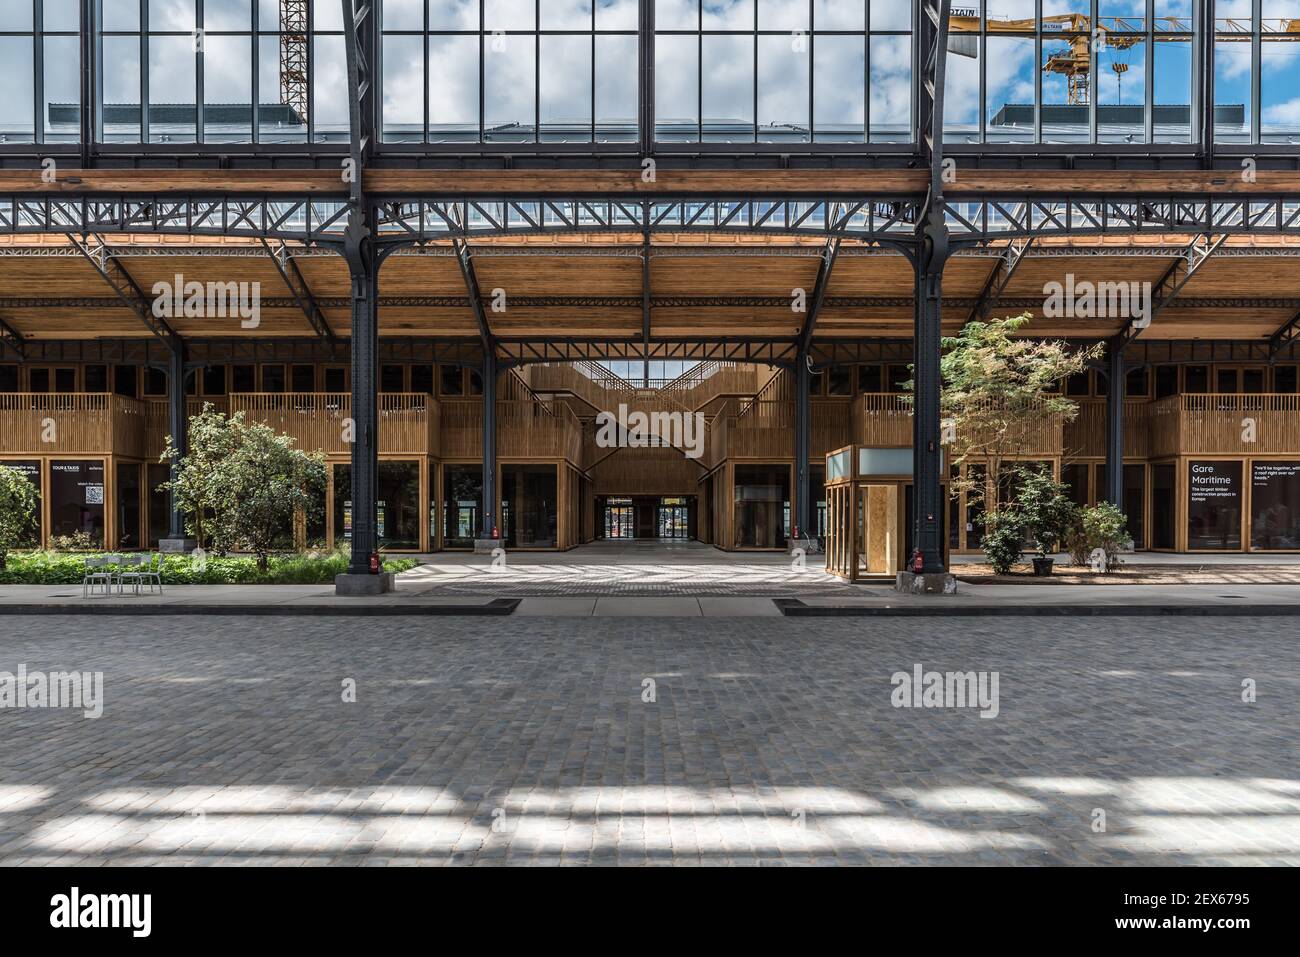 Bruxelles centro città / Belgio - 30 08 2020: Design interno in stile Liberty del Royal Depot al Tour and Taxis eventhall Foto Stock